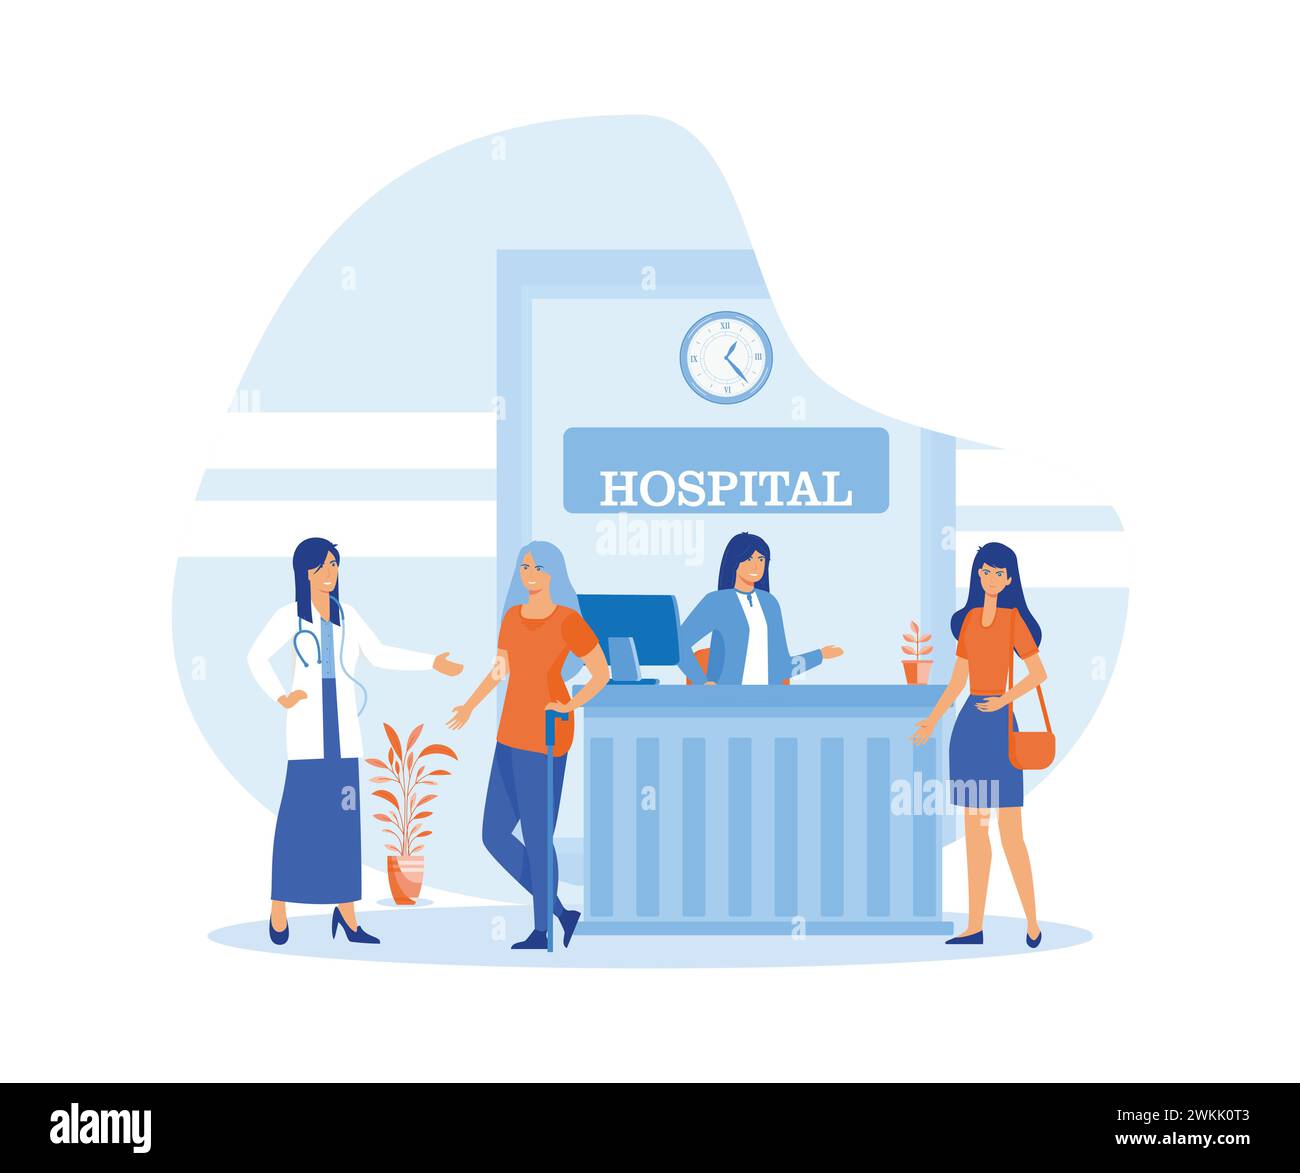 Accueil hospitalier bon travail dans la salle de la clinique pour aider, assister les patients. illustration moderne vectorielle plate Illustration de Vecteur